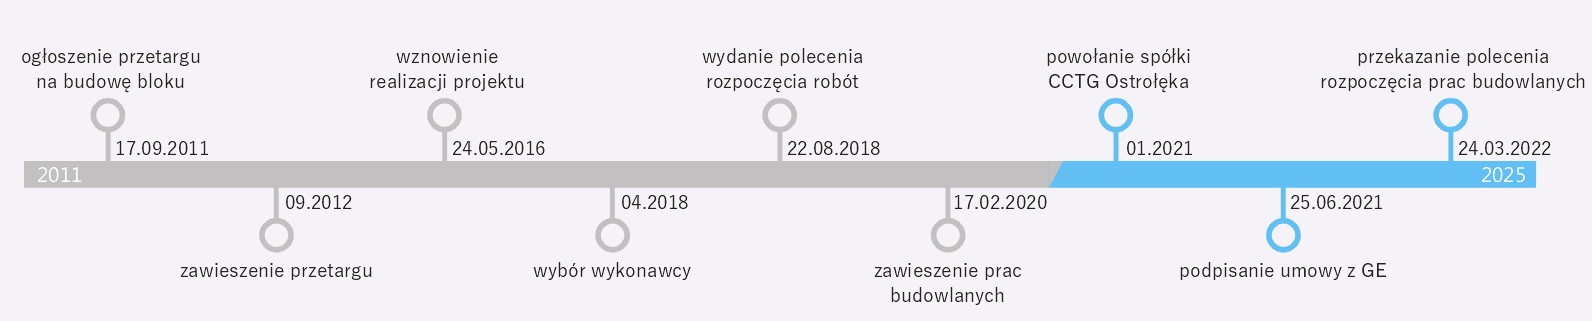 Ostrołęka C timeline